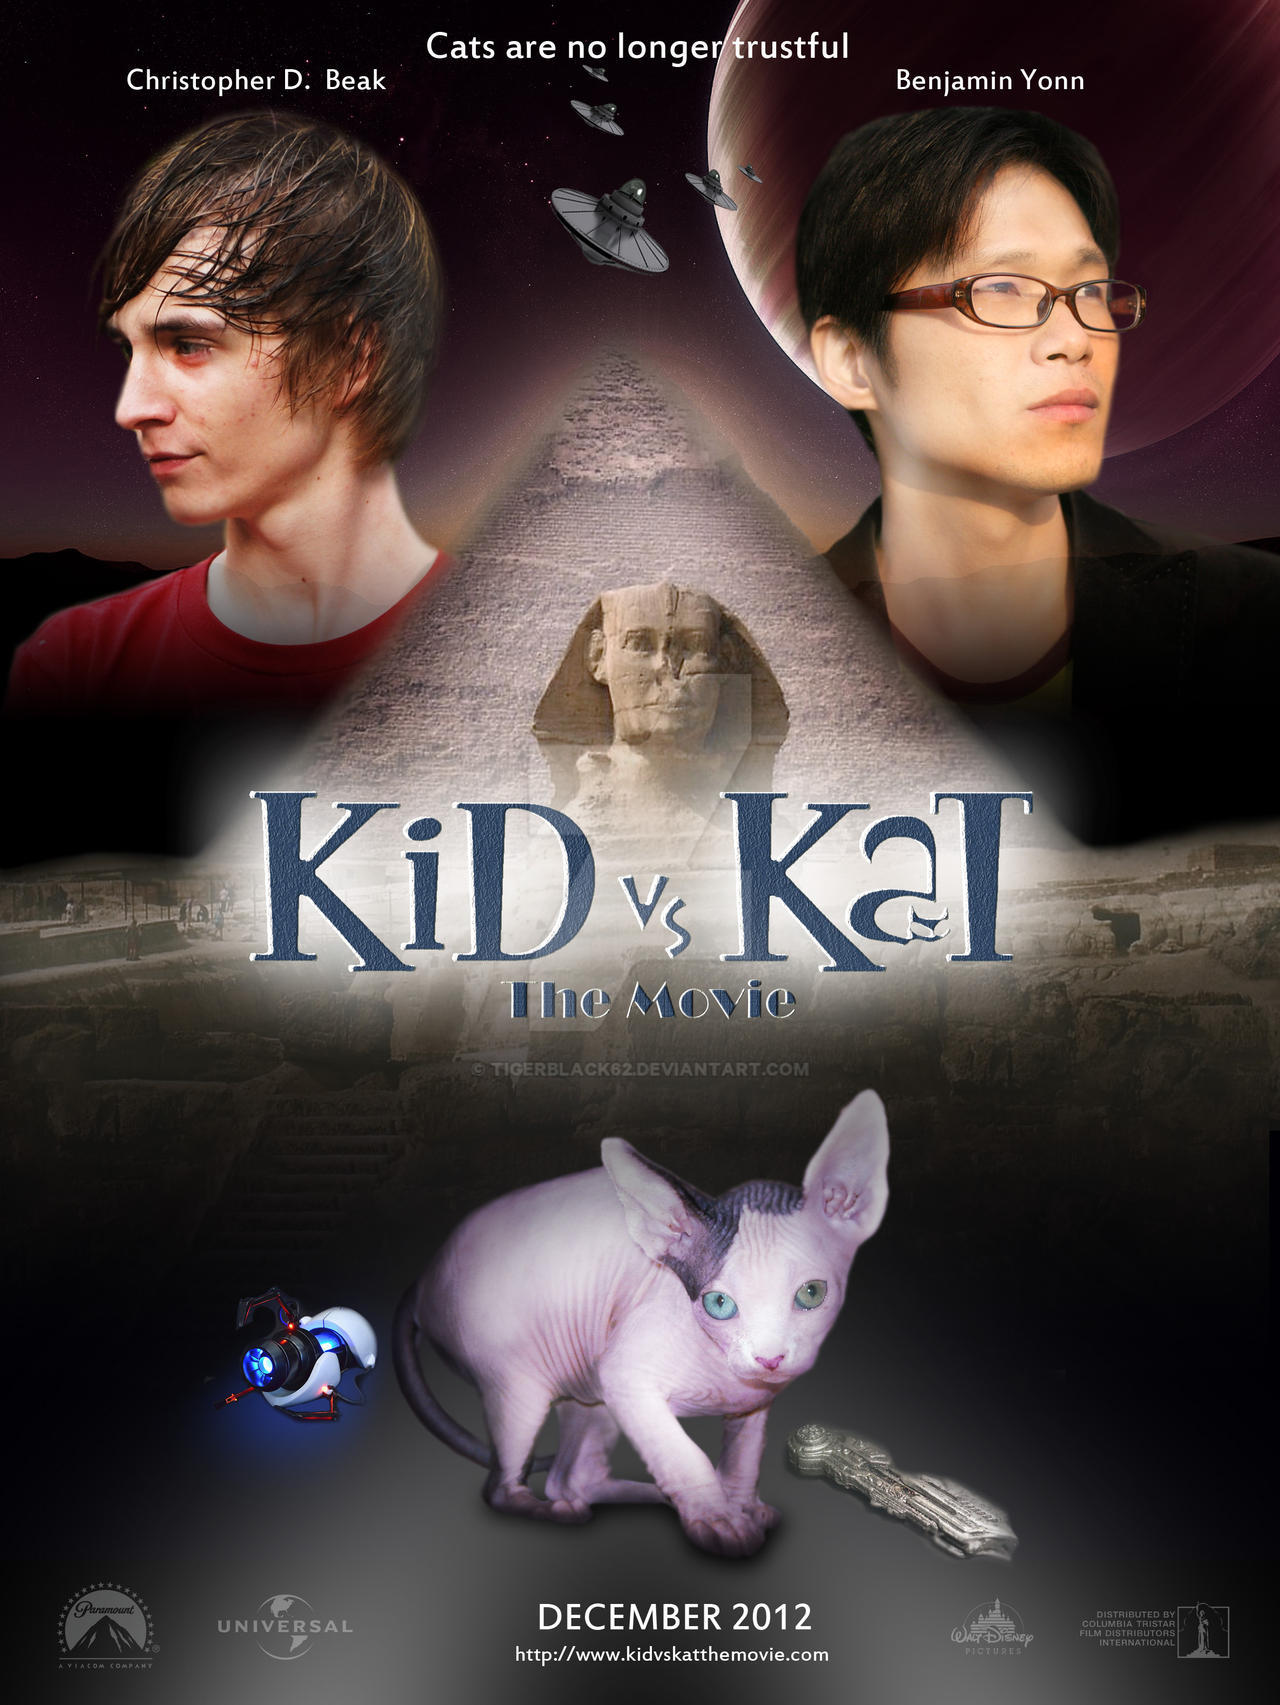 Kid vs Kat Movie Poster TigerBlack62 on DeviantArt